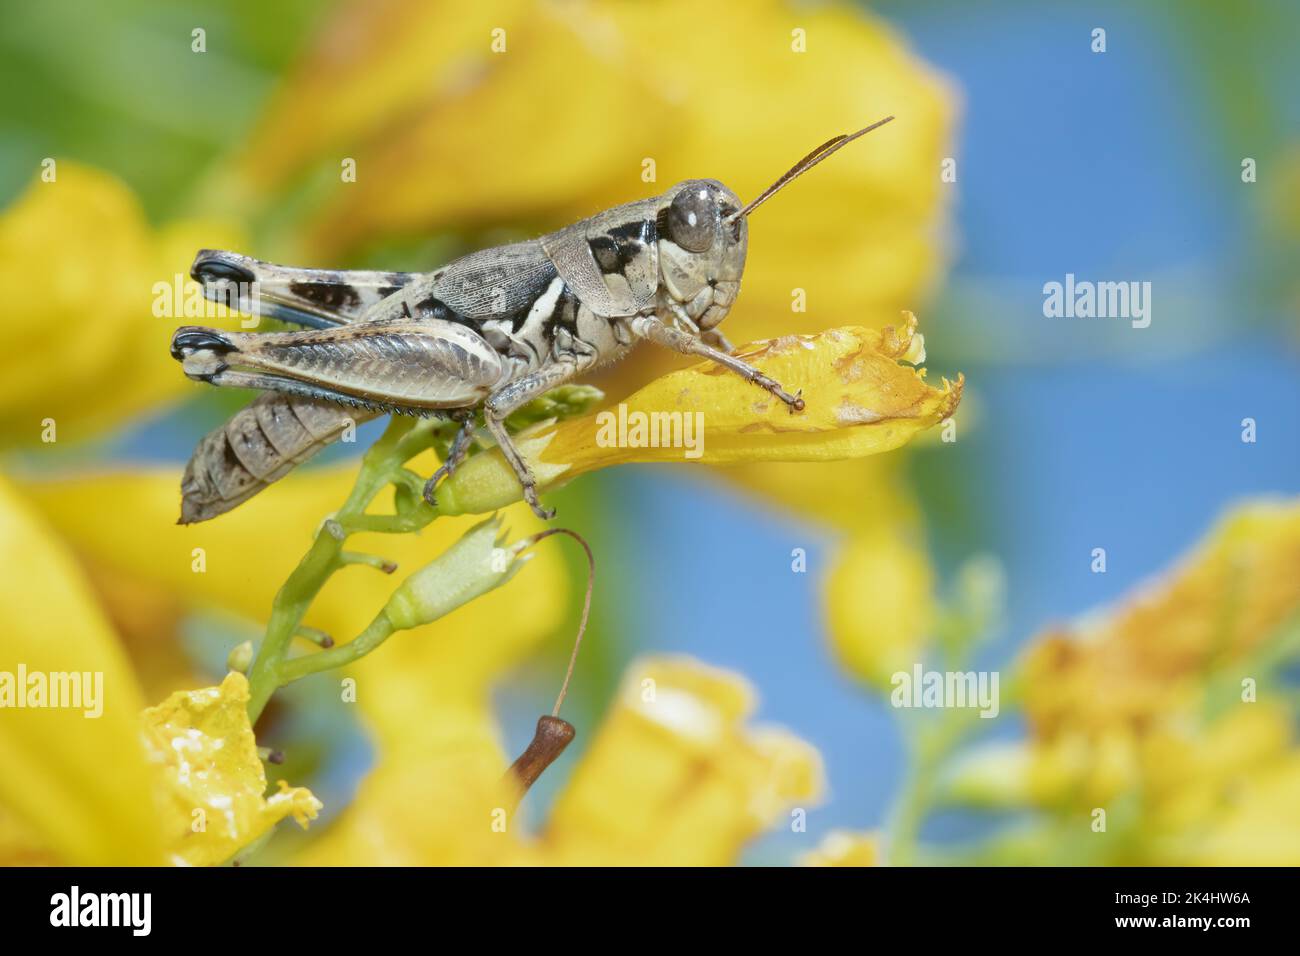 A lakin grasshopper feeds on a flowering esperanza shrub at Mitchell Lake near San Antonio, Texas. Stock Photo